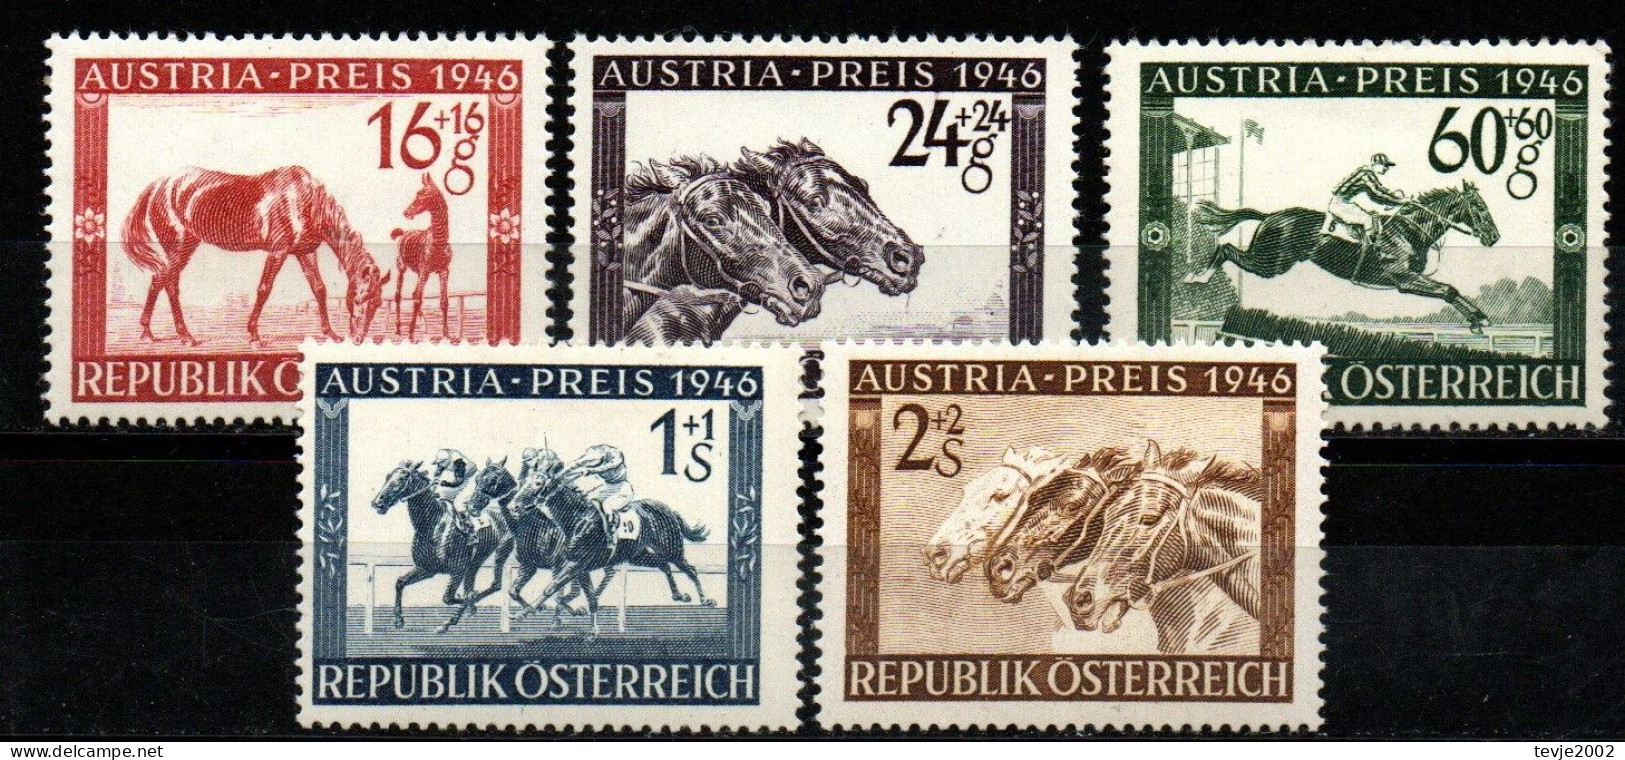 Österreich 1946 - Mi.Nr. 785 - 789 - Postfrisch MNH - Tiere Animals Pferde Horses Sport Reiten Riding - Ippica